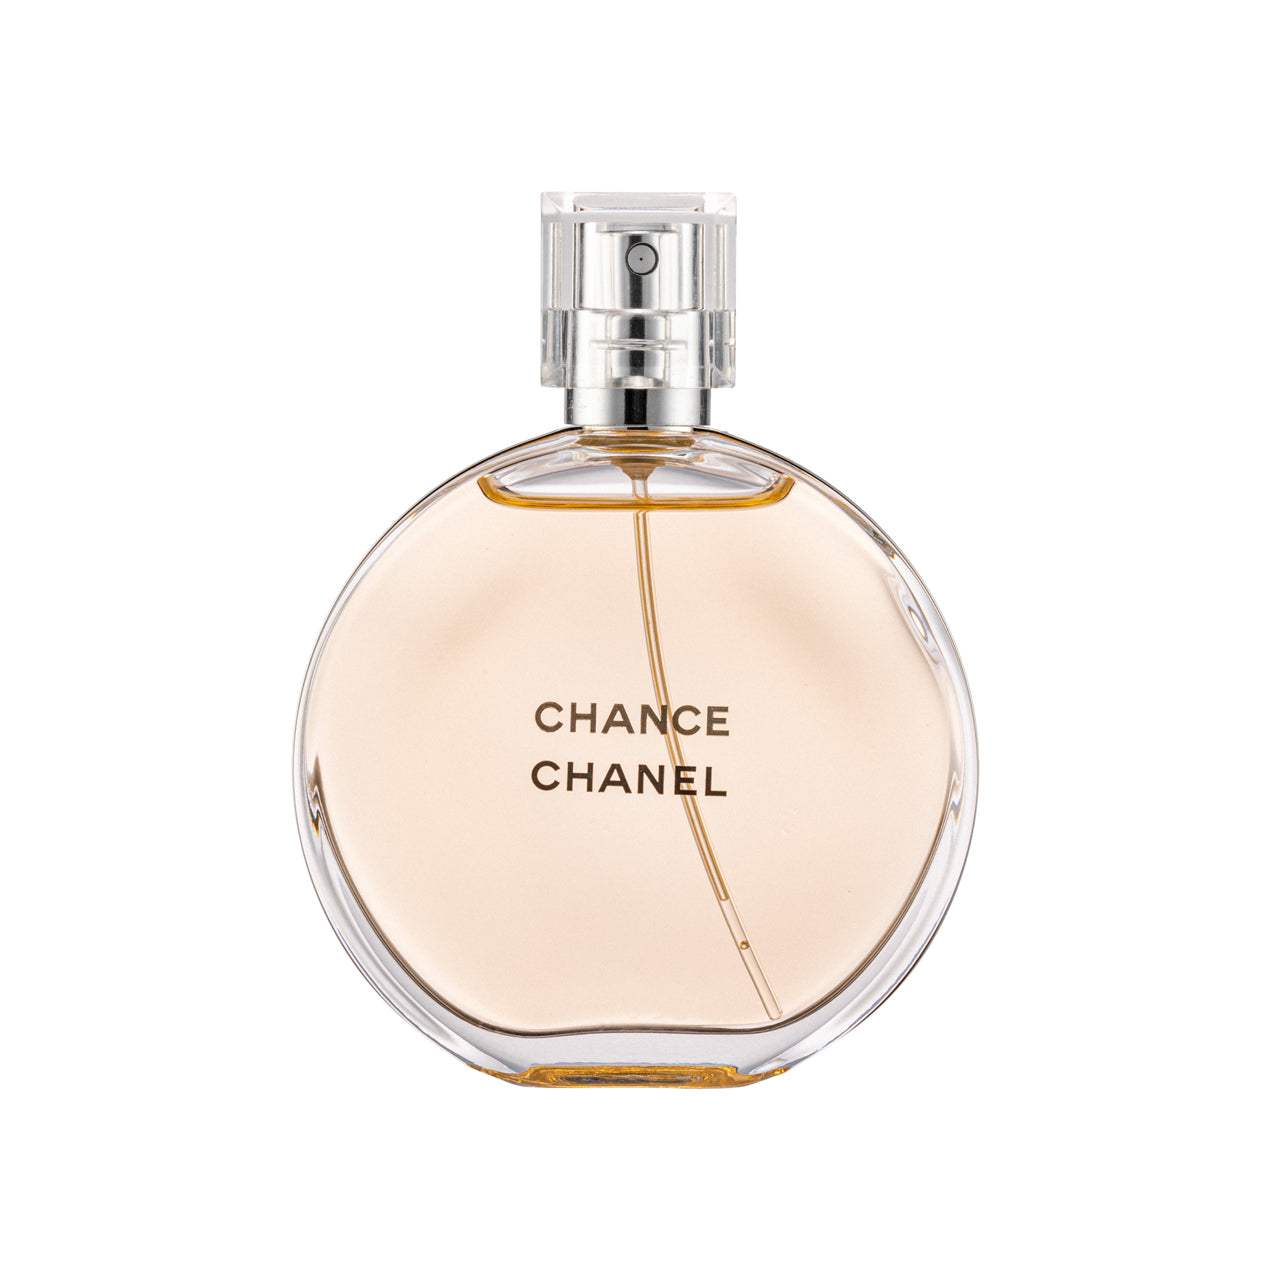 Chanel Chance Eau de Toilette Vaporisateur Spray 50ml